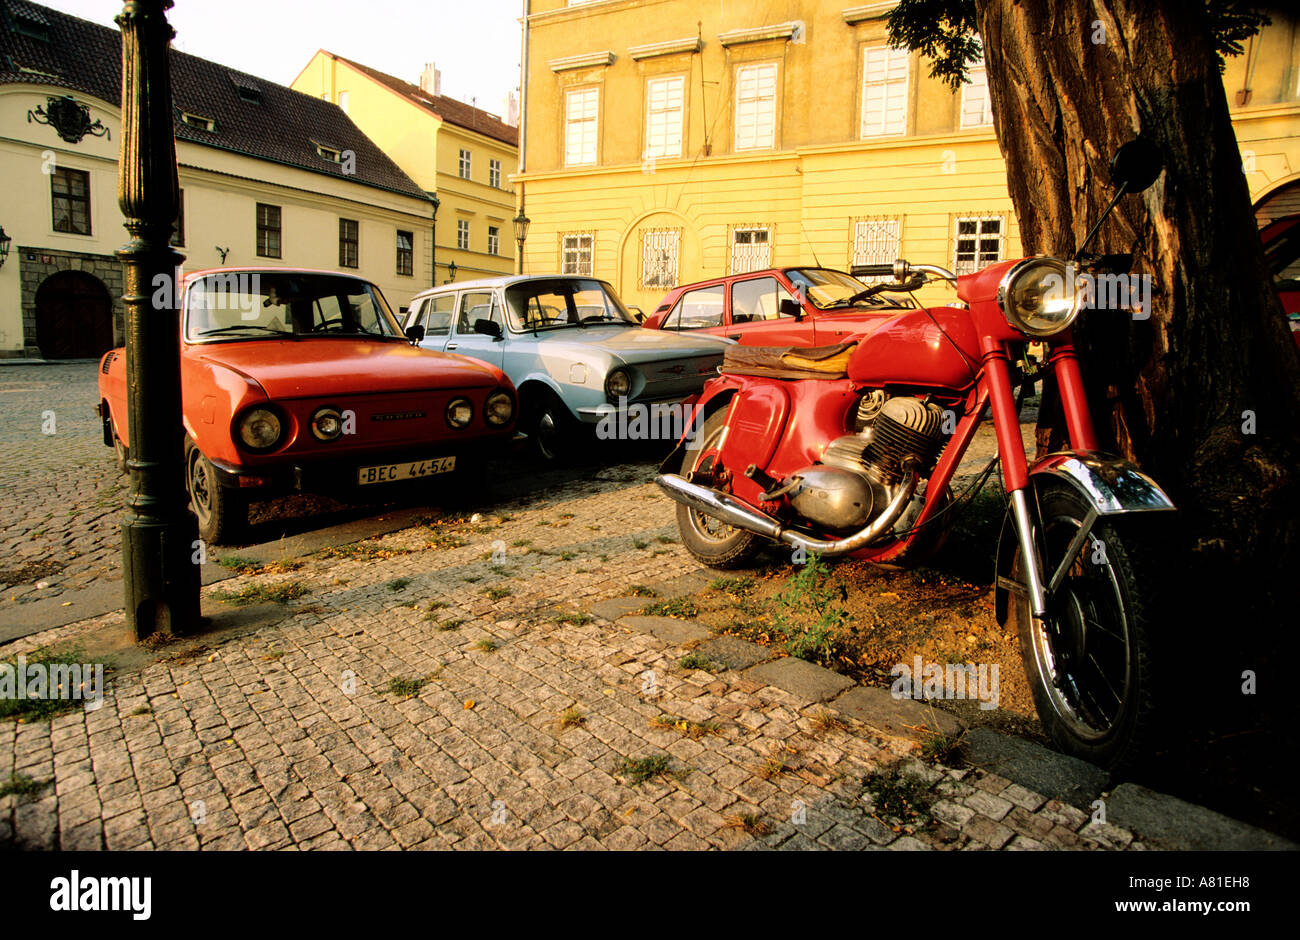 Repubblica Ceca, Praga, Hradcany distretto, le vecchie autovetture e la vecchia moto del tempo comunista Foto Stock